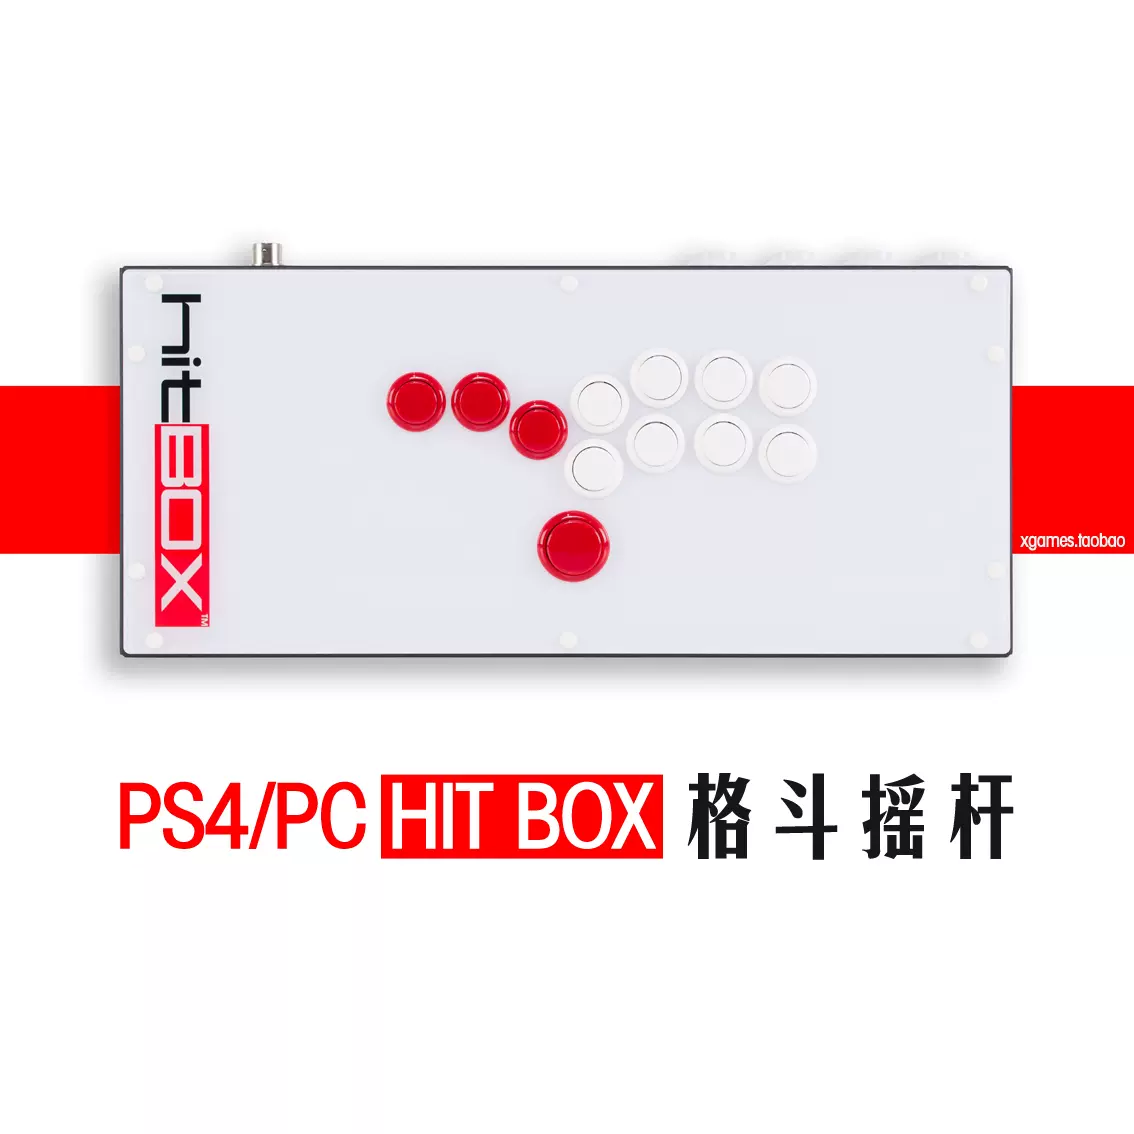 じボタンサ PlayStation4 - Smart BOX Pro 24φ (SOCD対応hitbox型PS4/PC対応の ーラーの